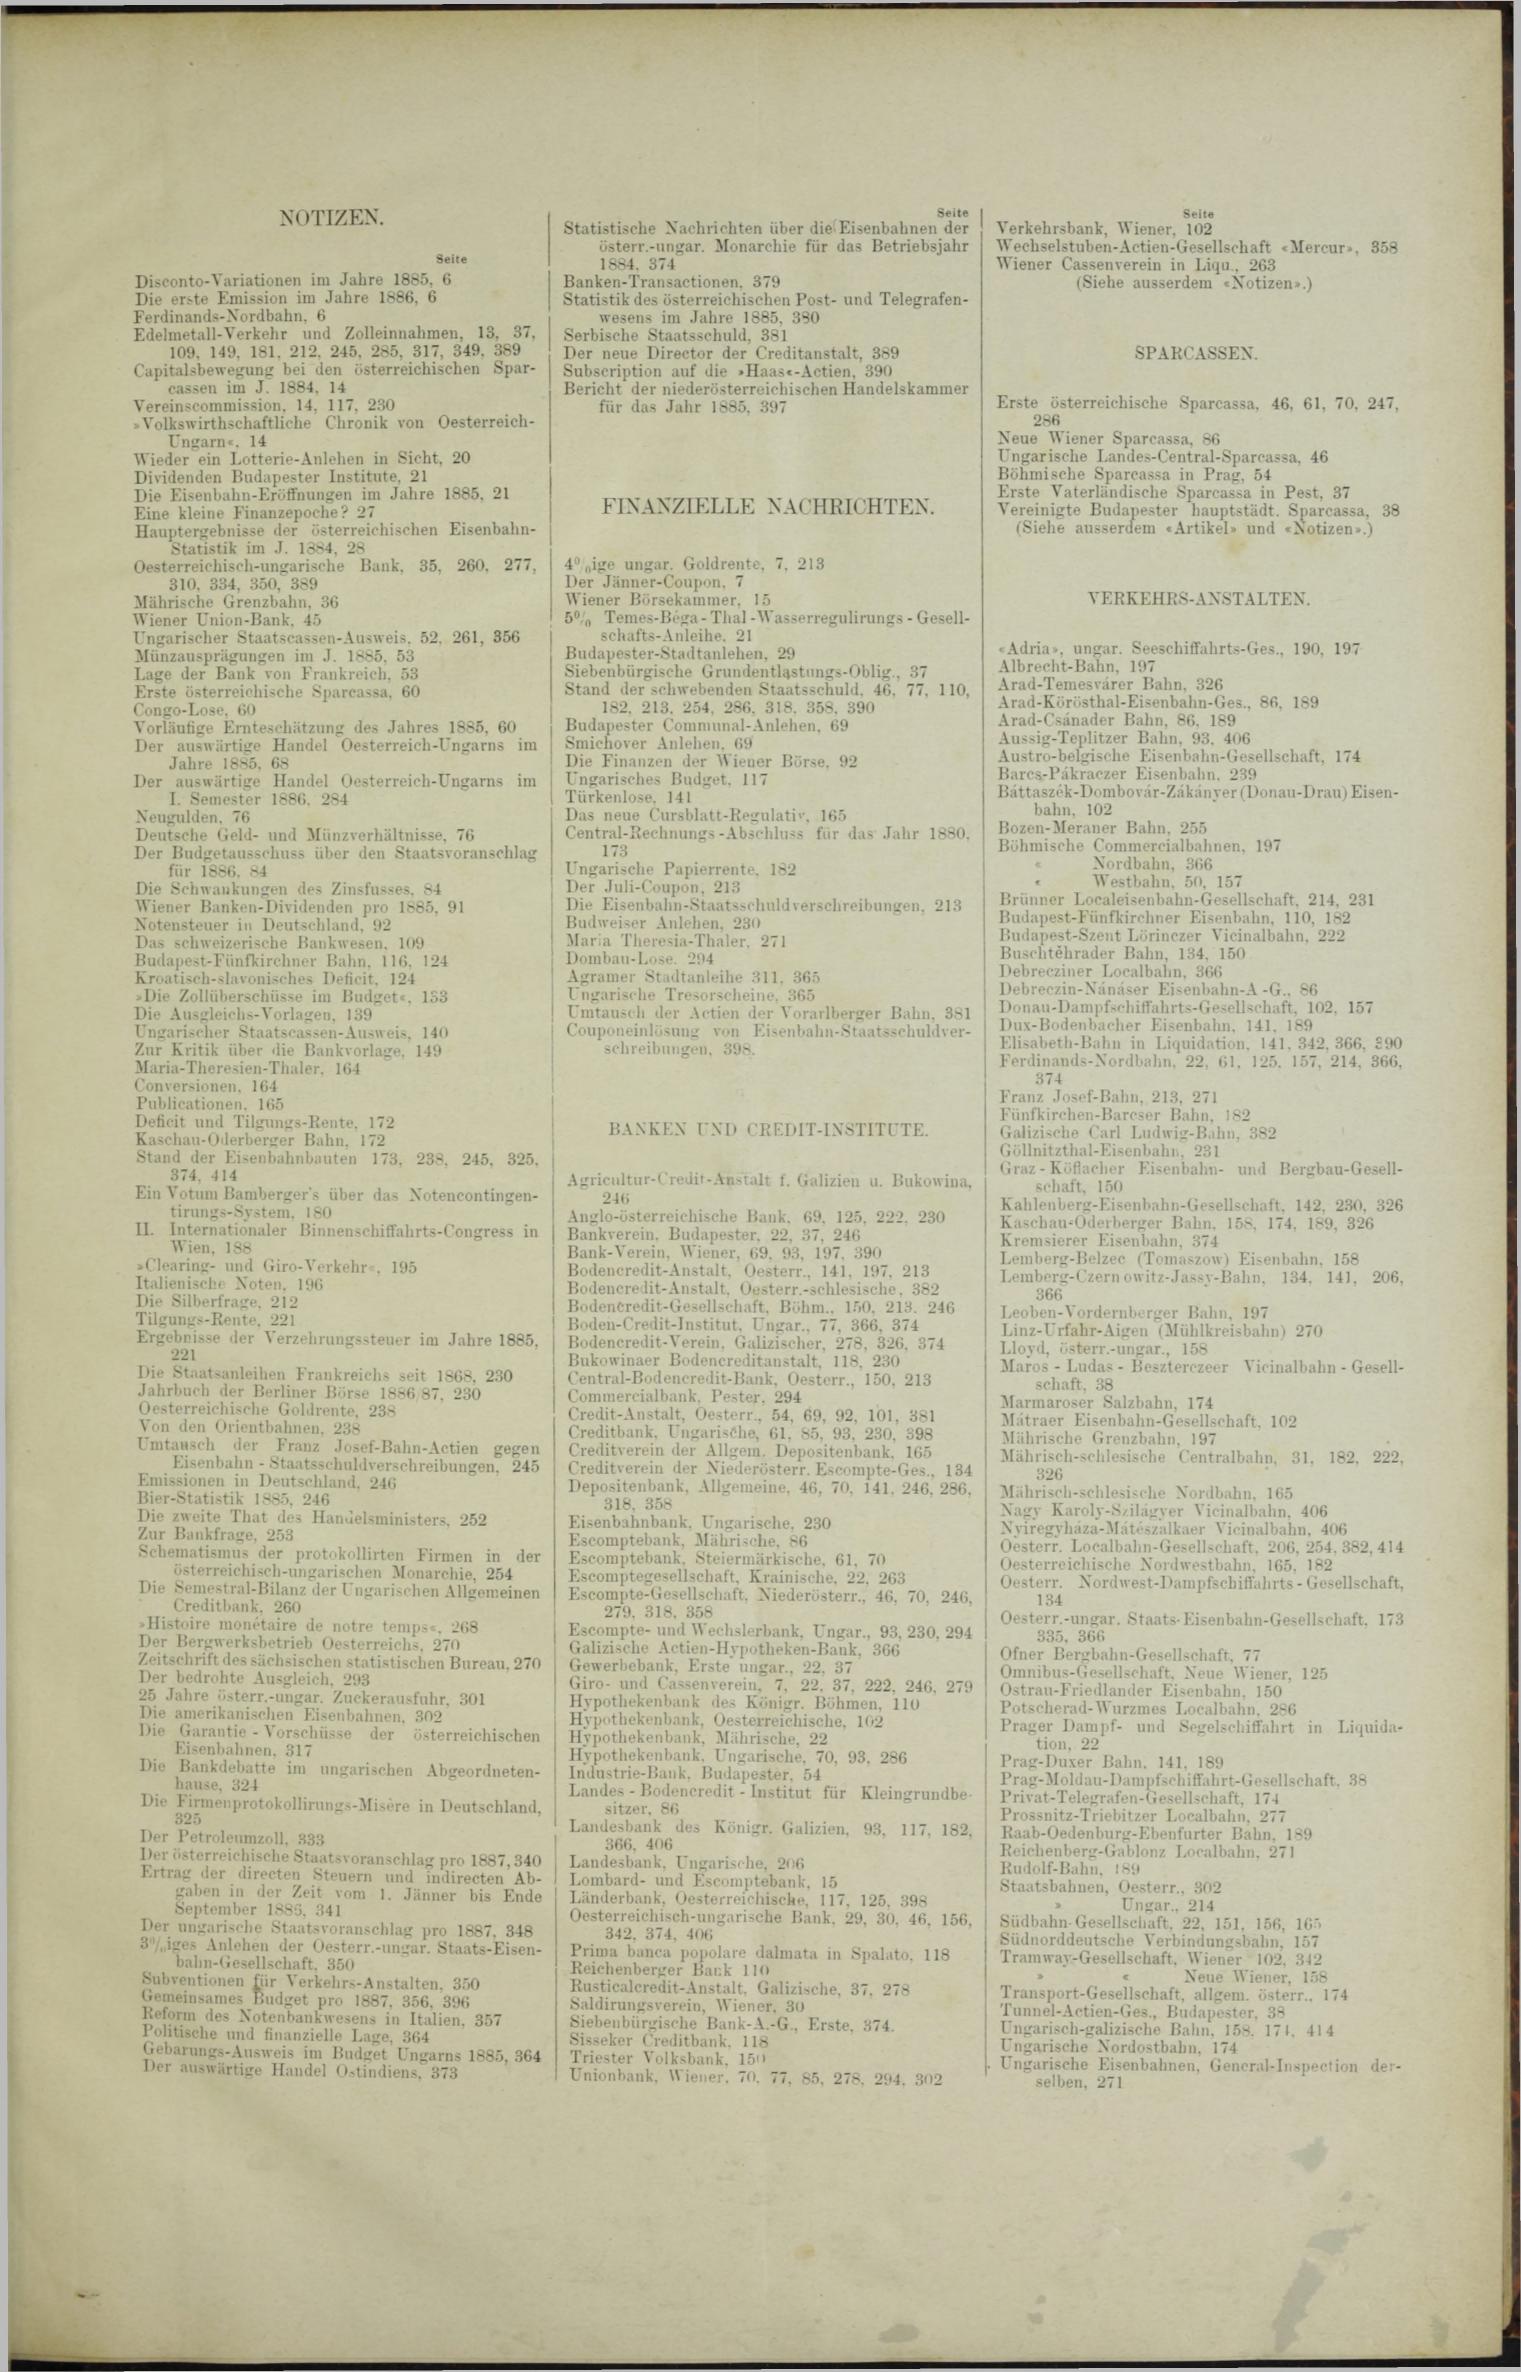 Der Tresor 08.04.1886 - Seite 11